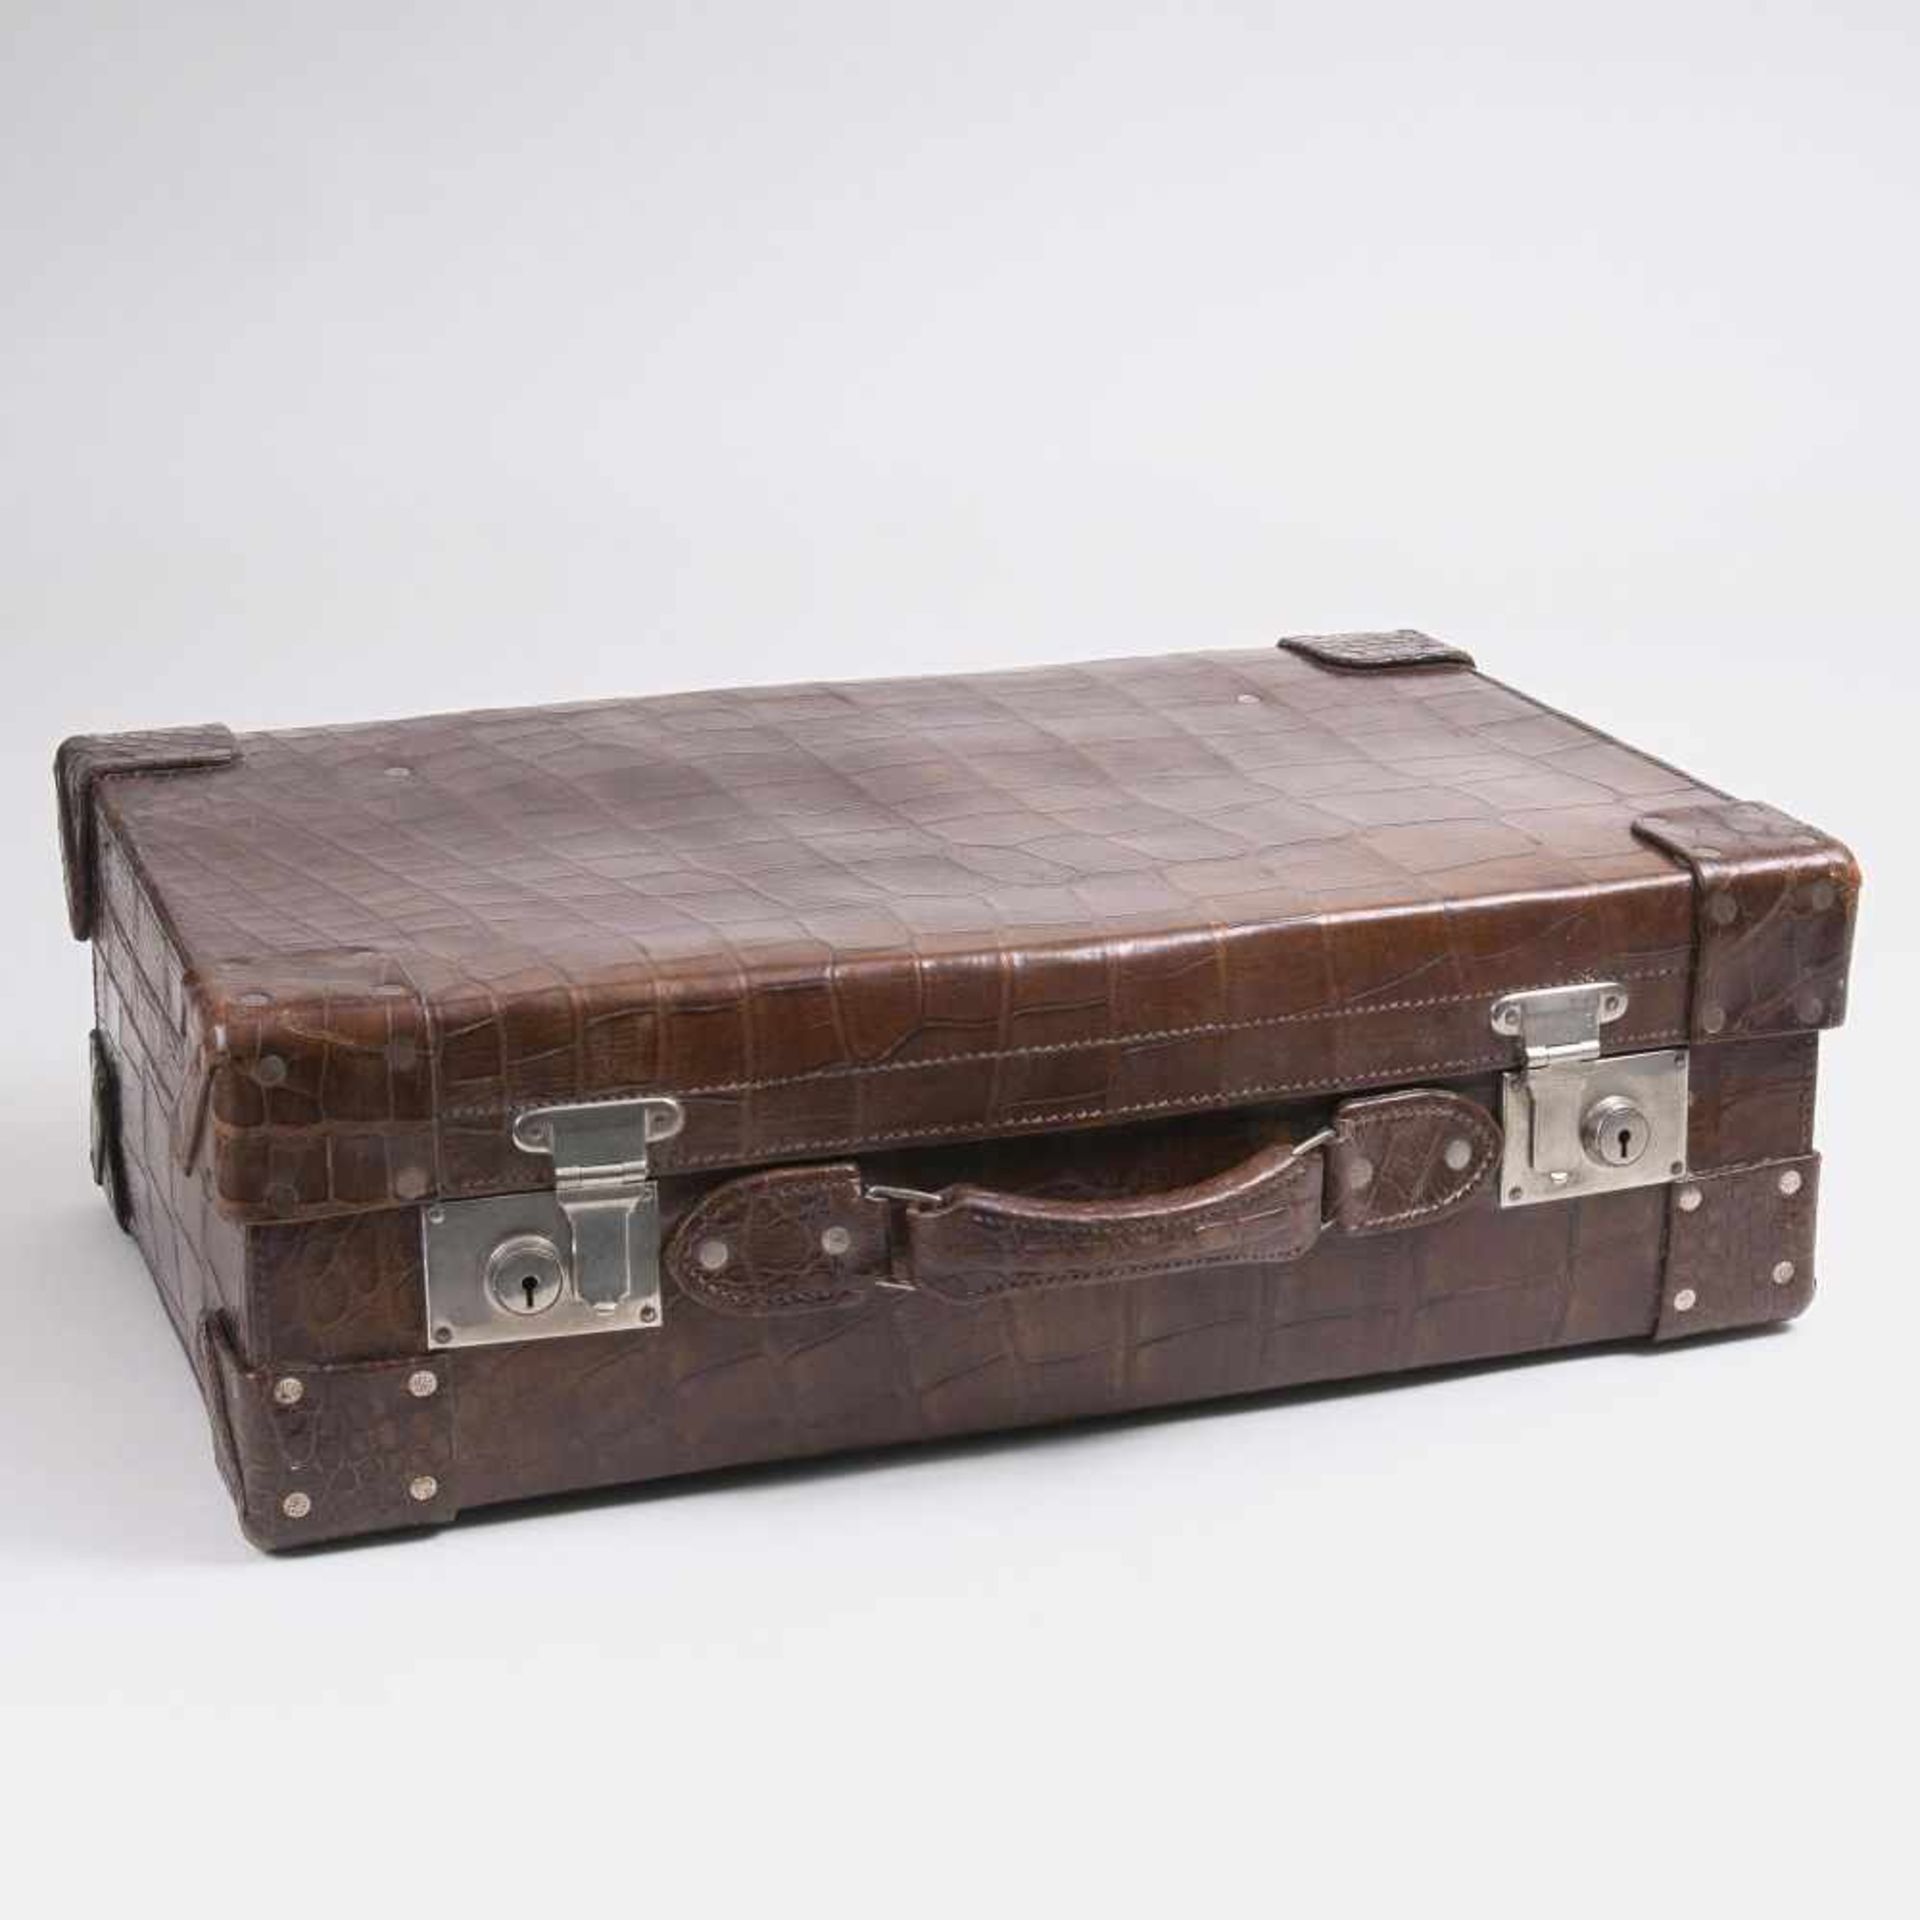 Kroko-ReisekofferUm 1930. Krokodilleder, braun. Geräumiger Koffer mit Tragegriff und zwei